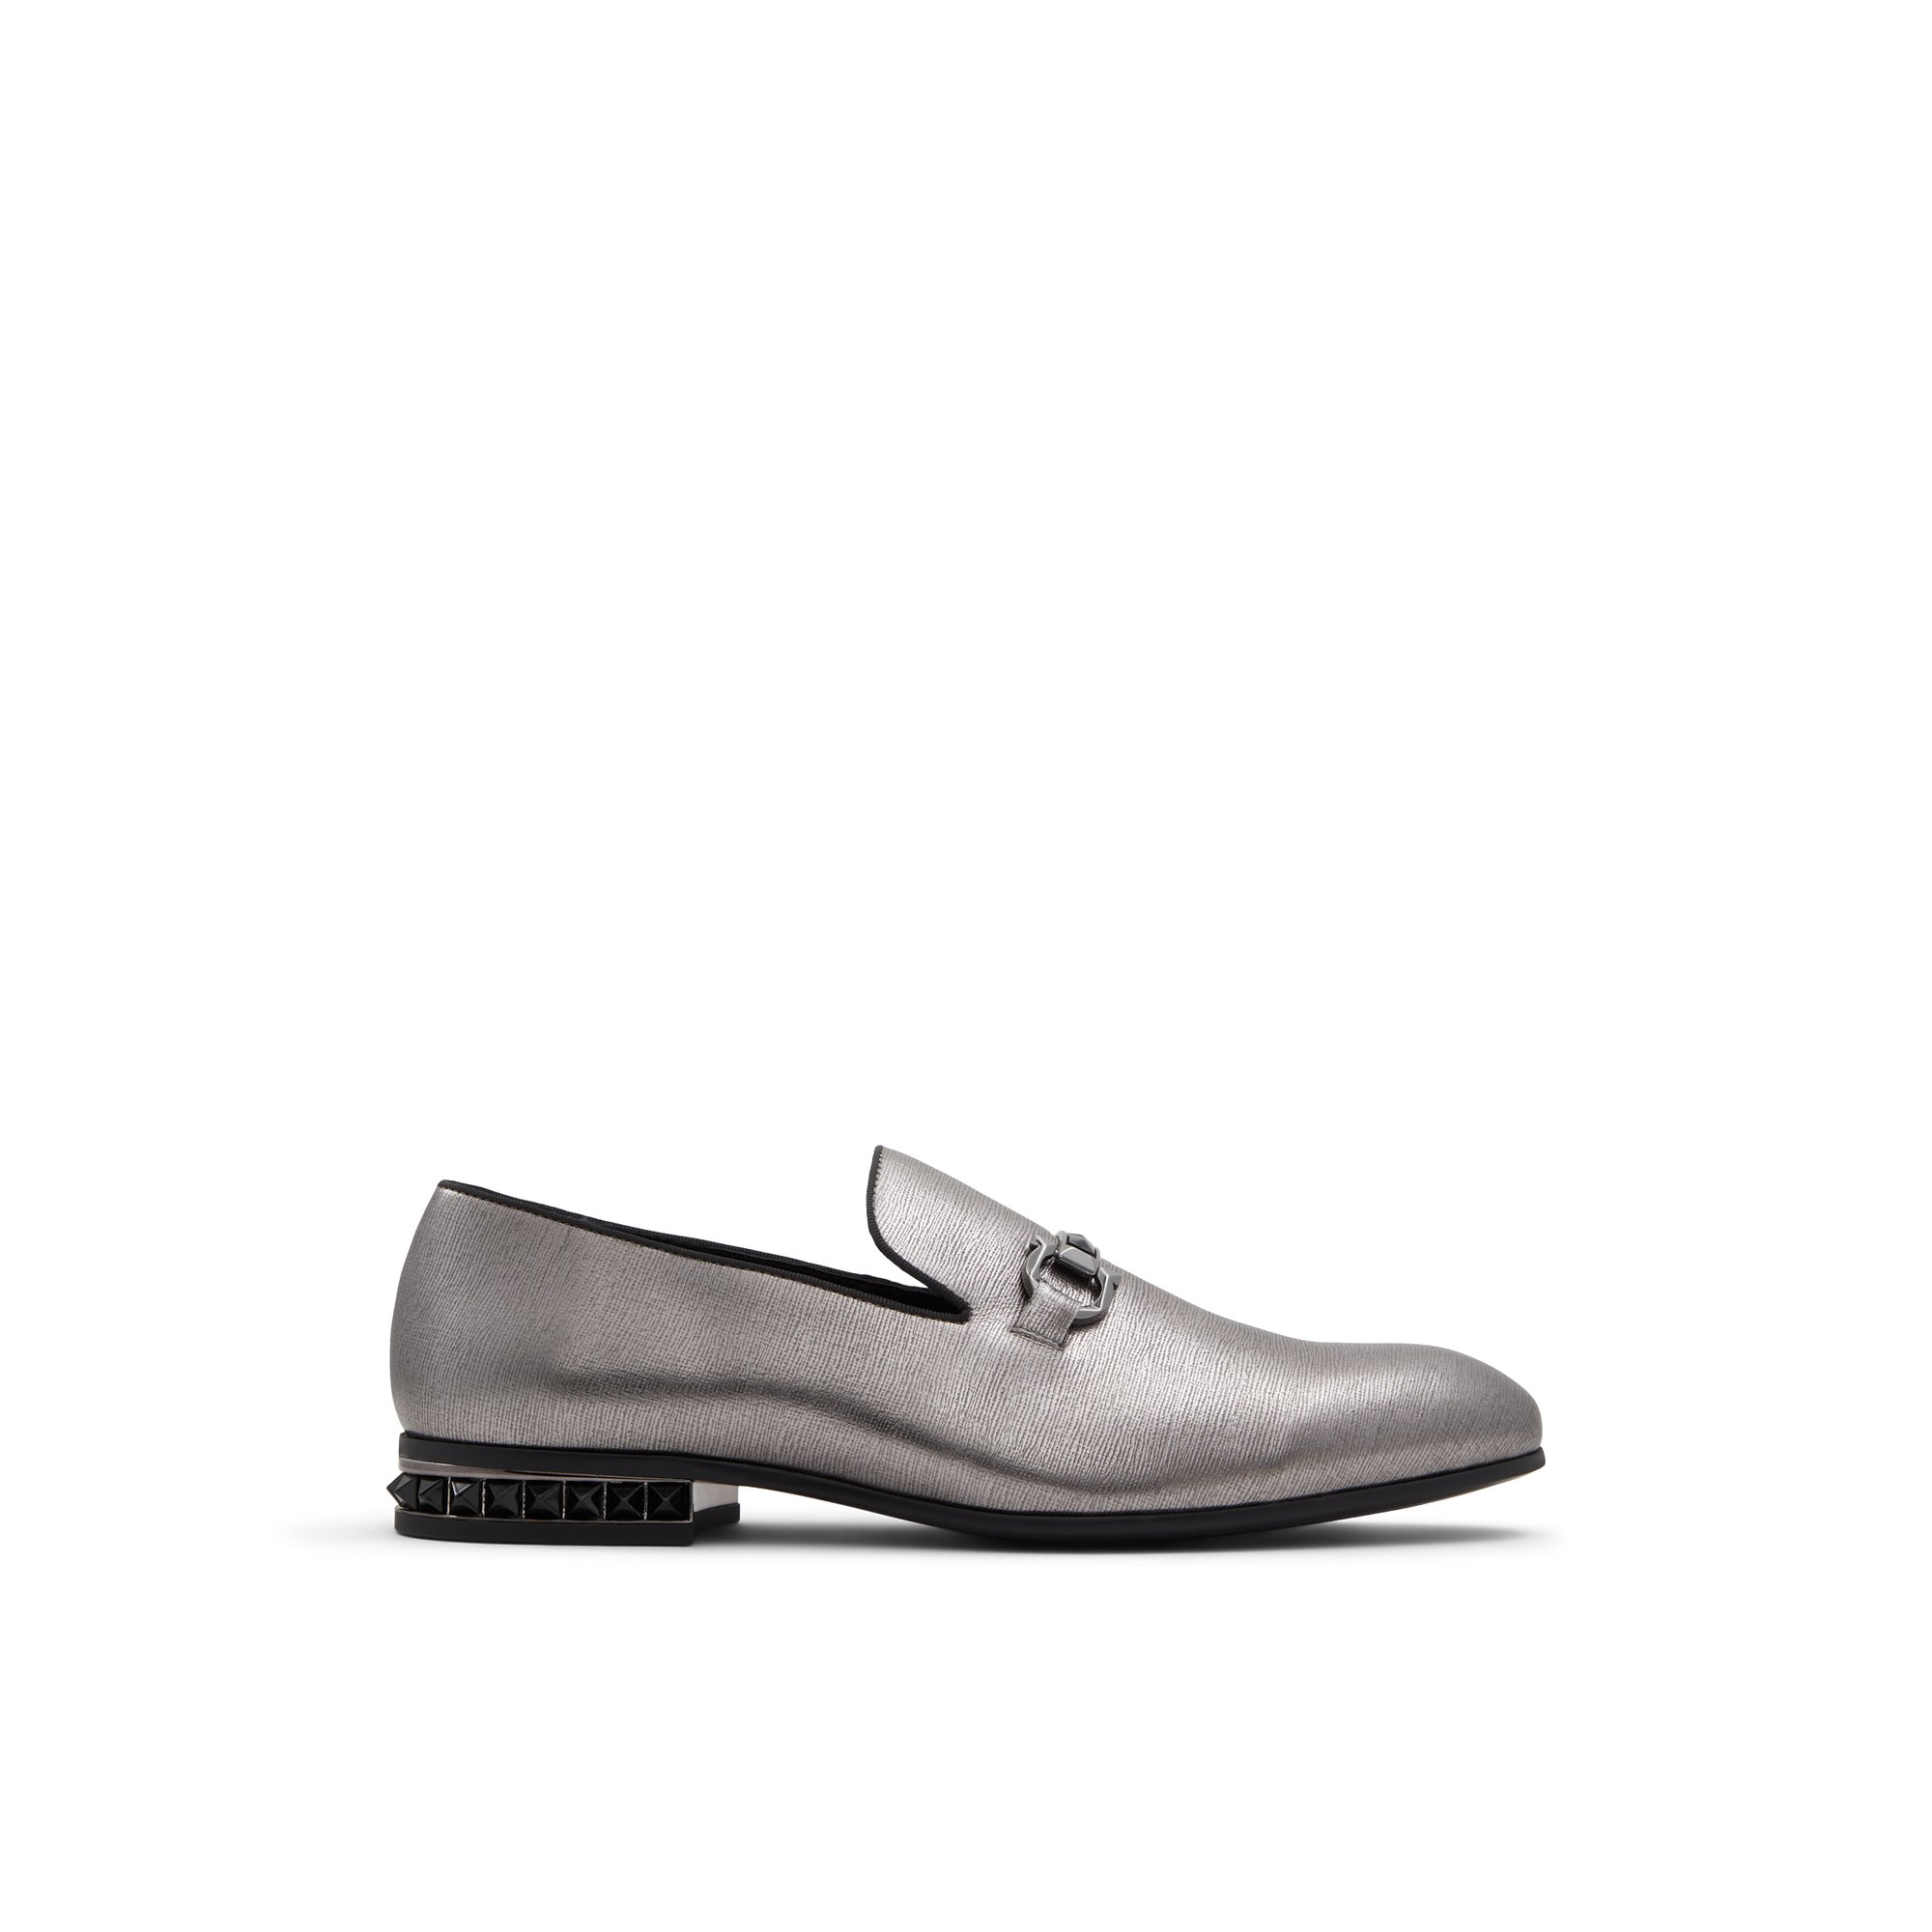 ALDO Bowtie - Men's Dress Shoes - Grey